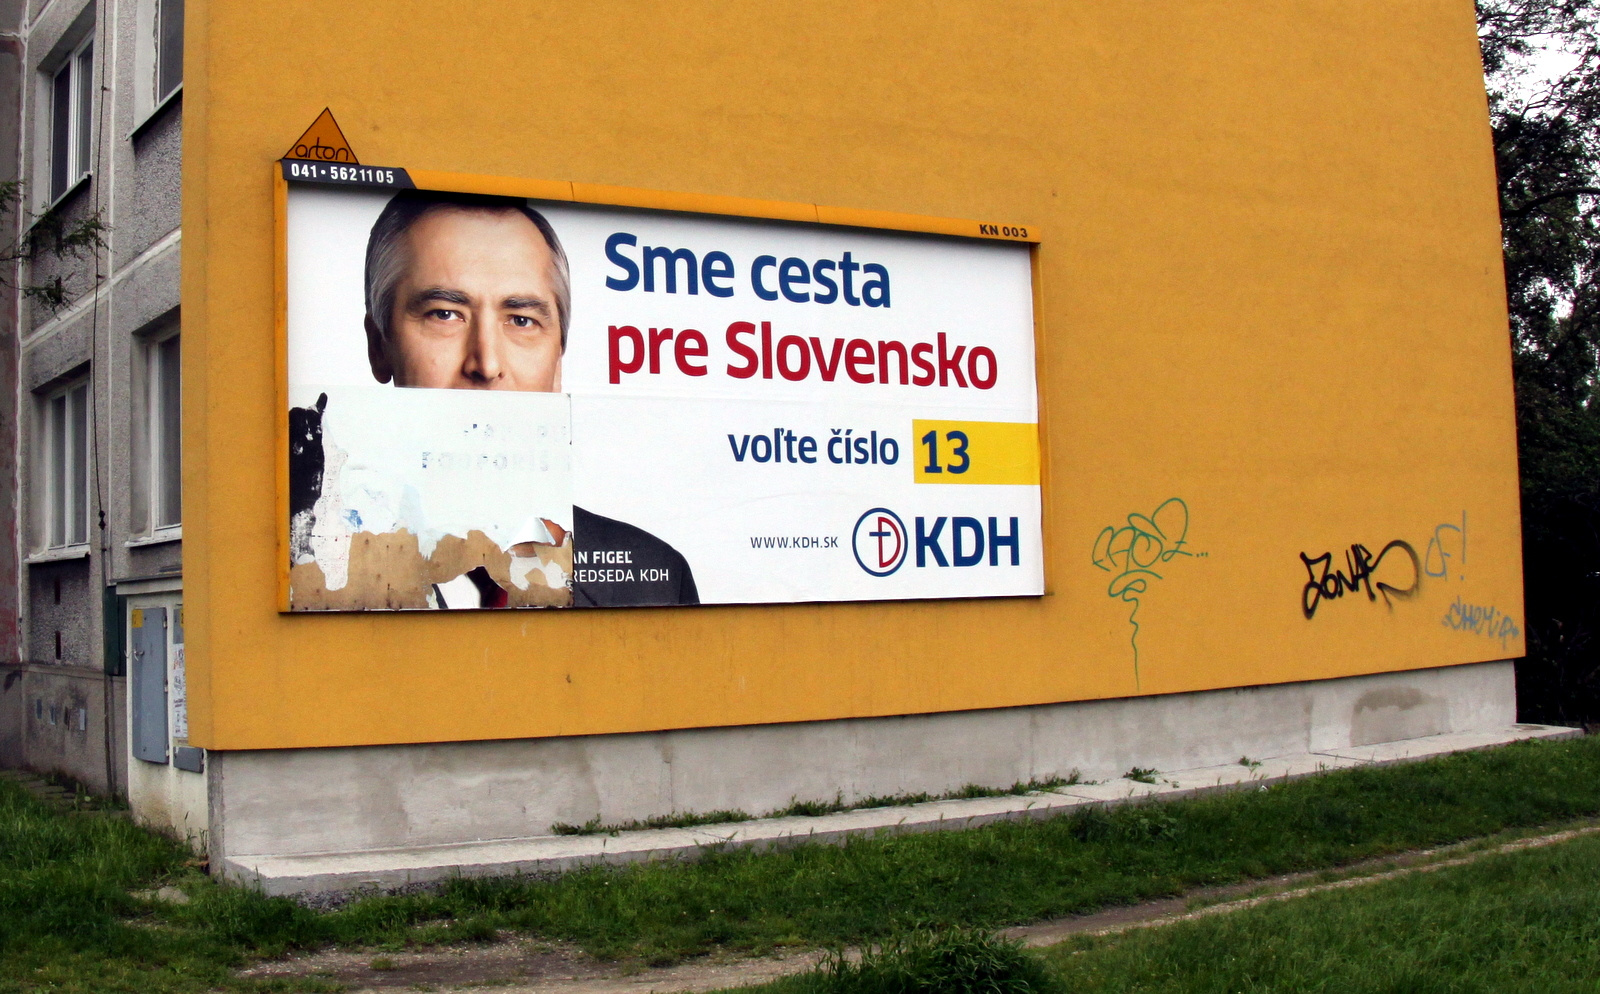 Kereszténydemokraták: Mi vagyunk az út Szlovákia számára (Komáro